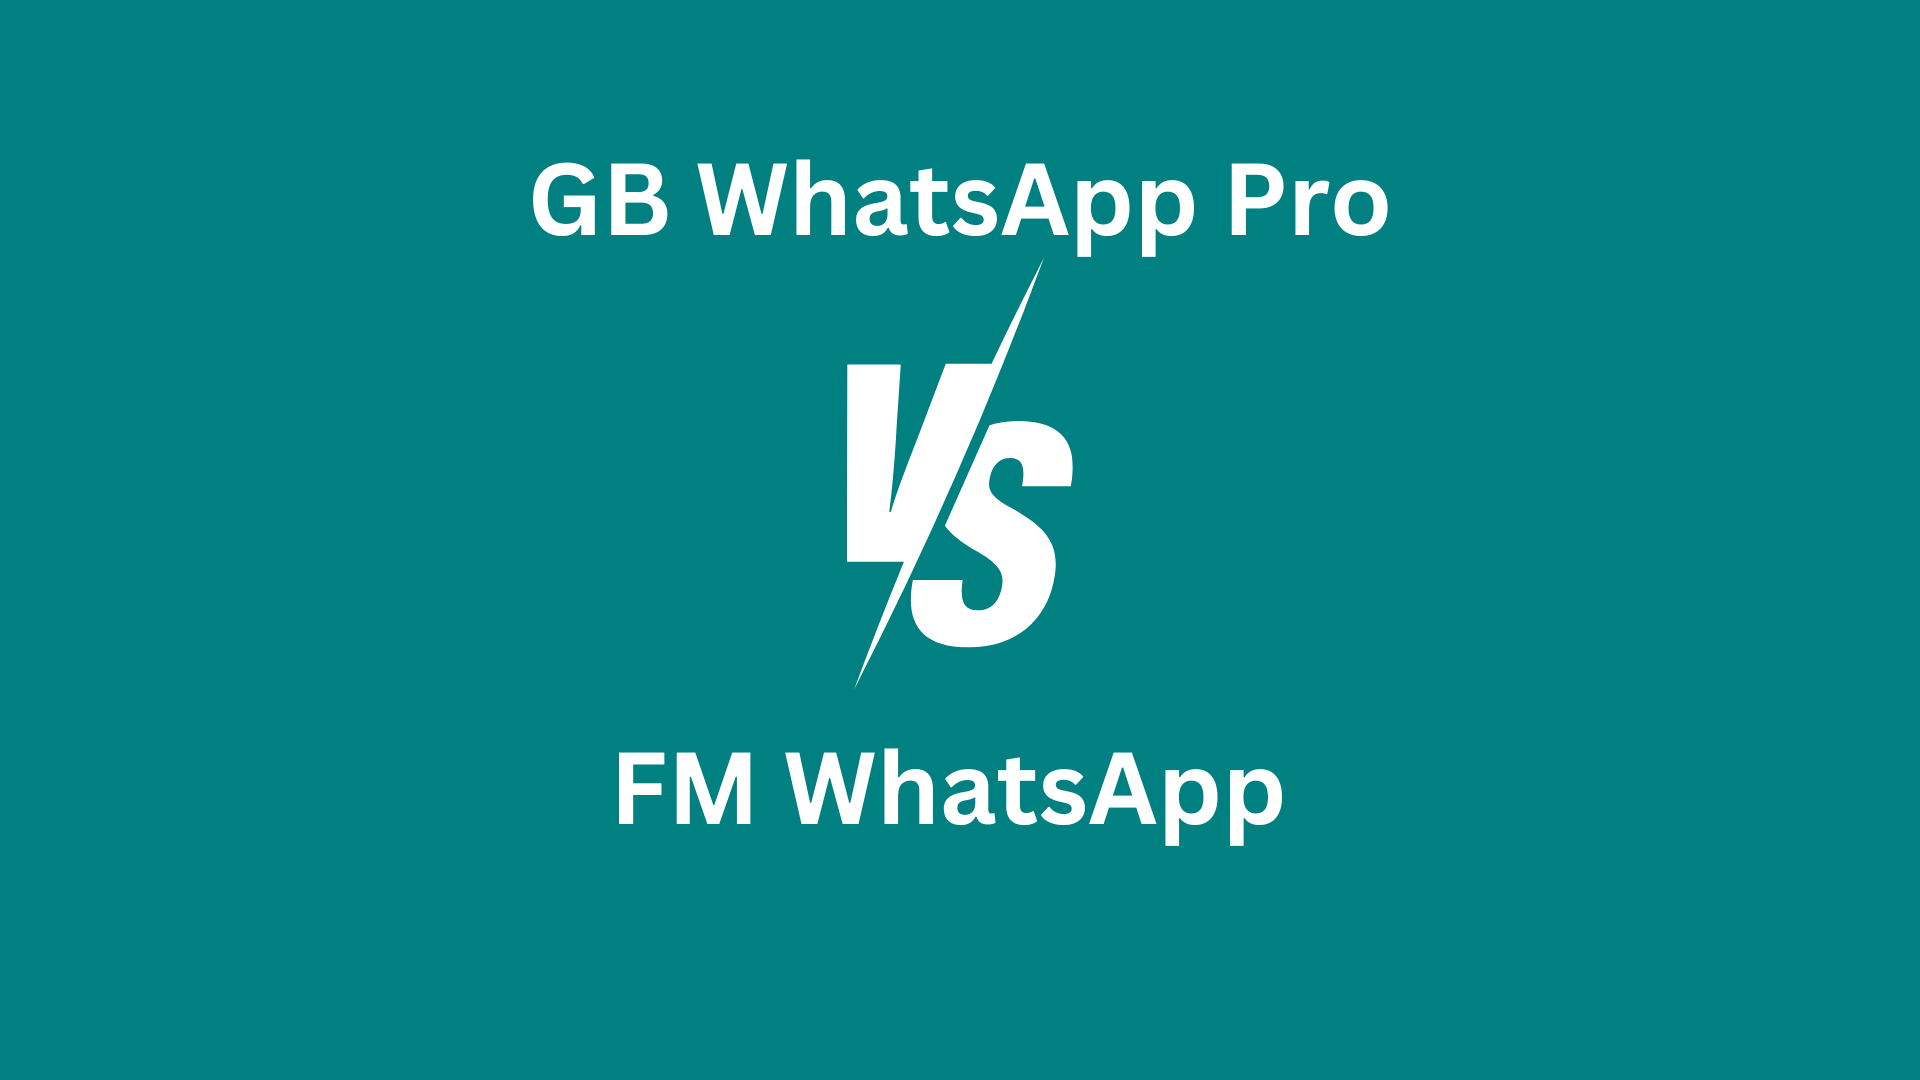 gb-whatsapp-pro-vs-fm-whatsapp-image